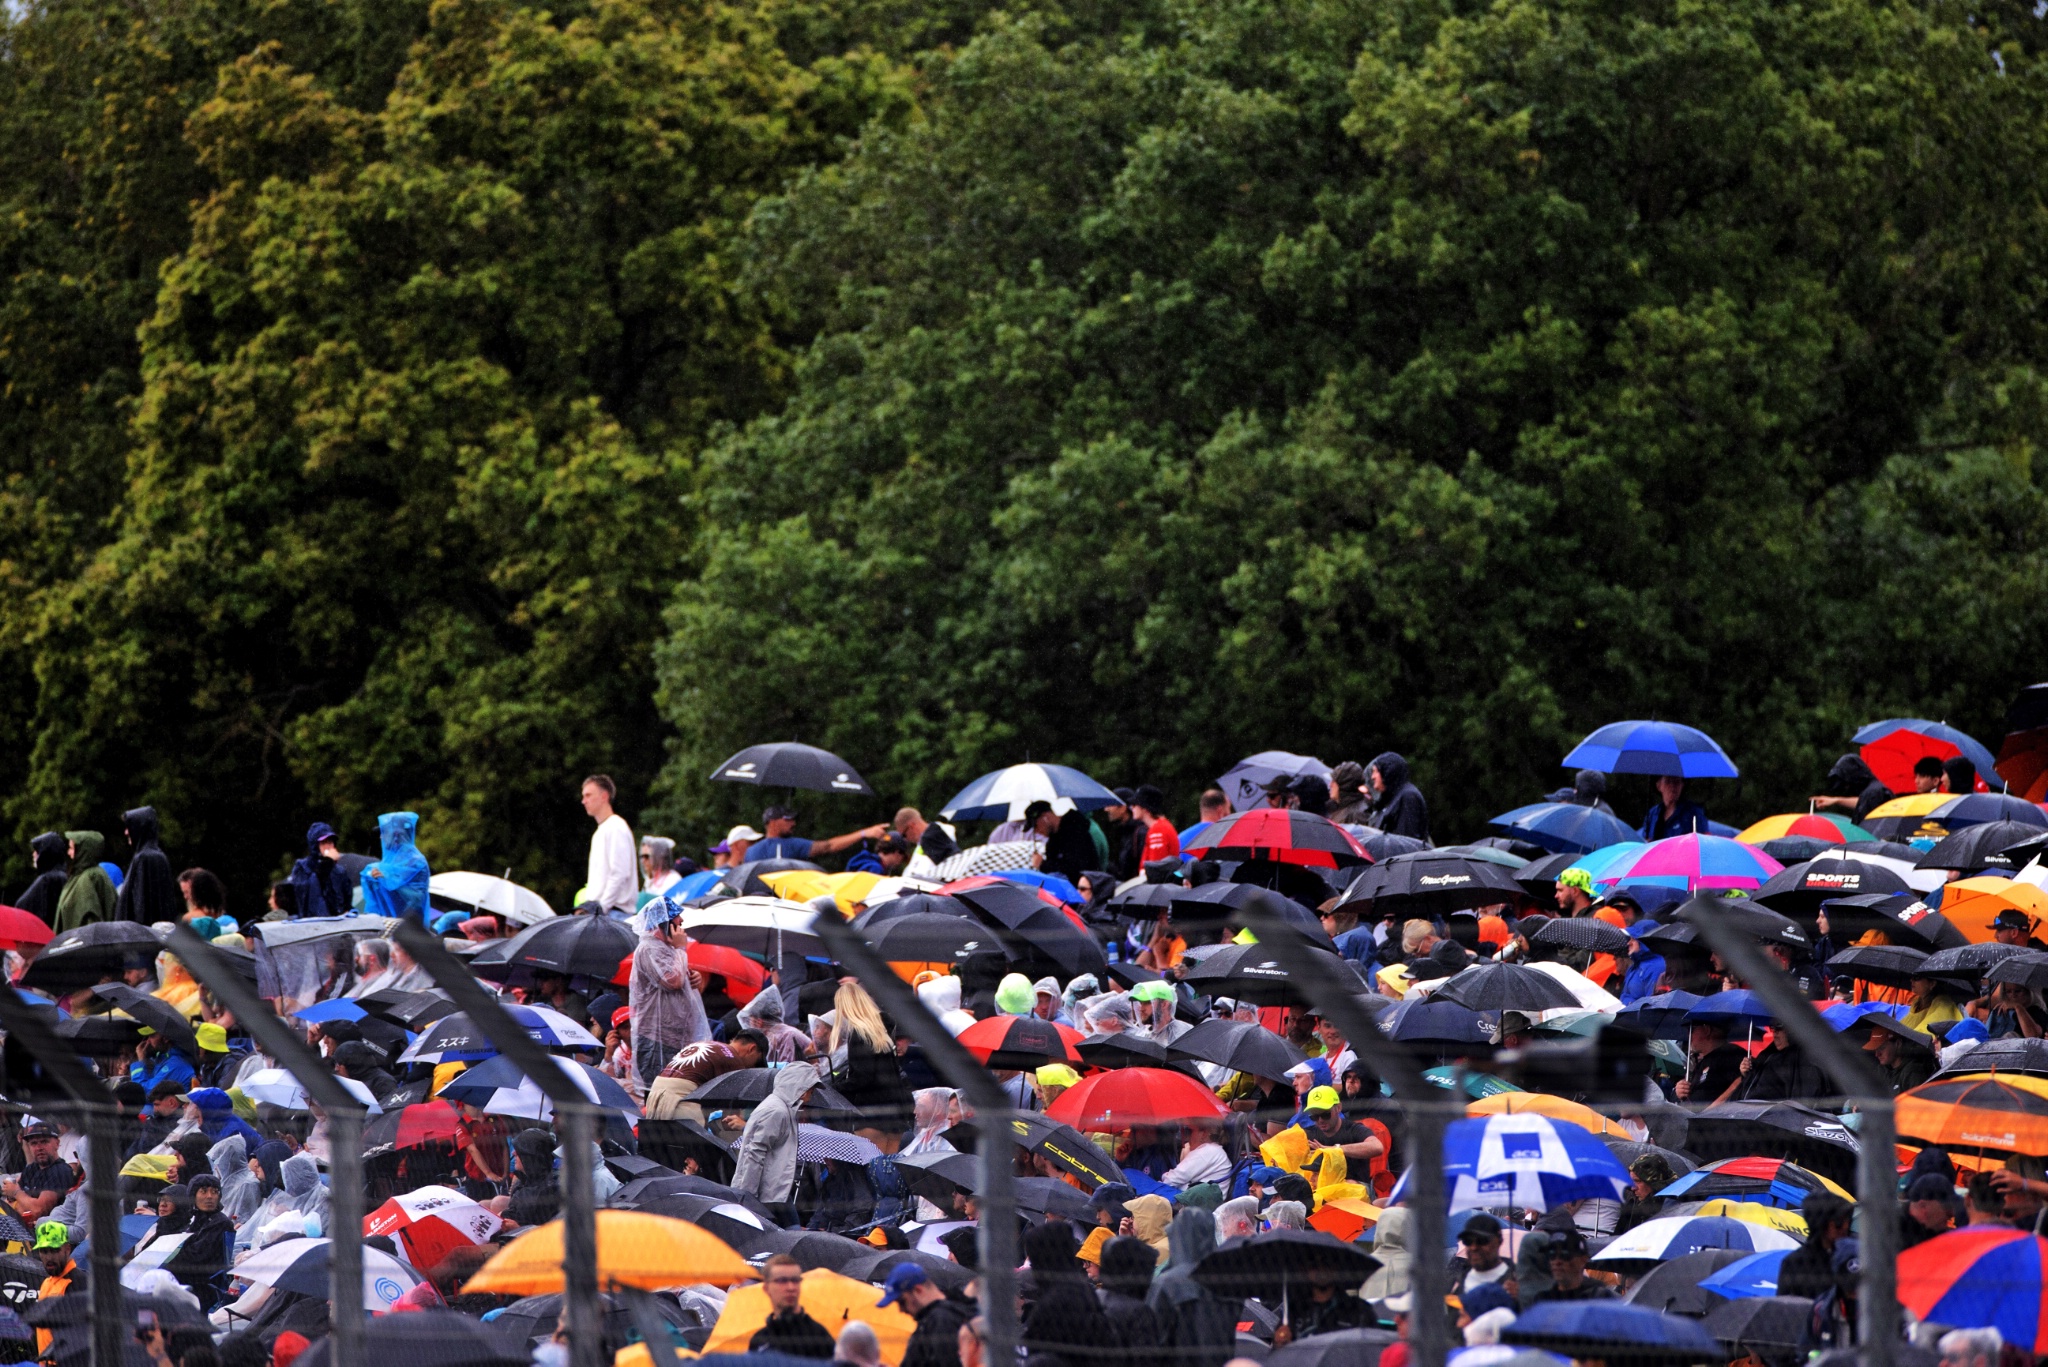 Suasana sirkuit - penggemar saat hujan. Kejuaraan Dunia Formula 1, Rd 11, Grand Prix Inggris, Silverstone, Inggris,